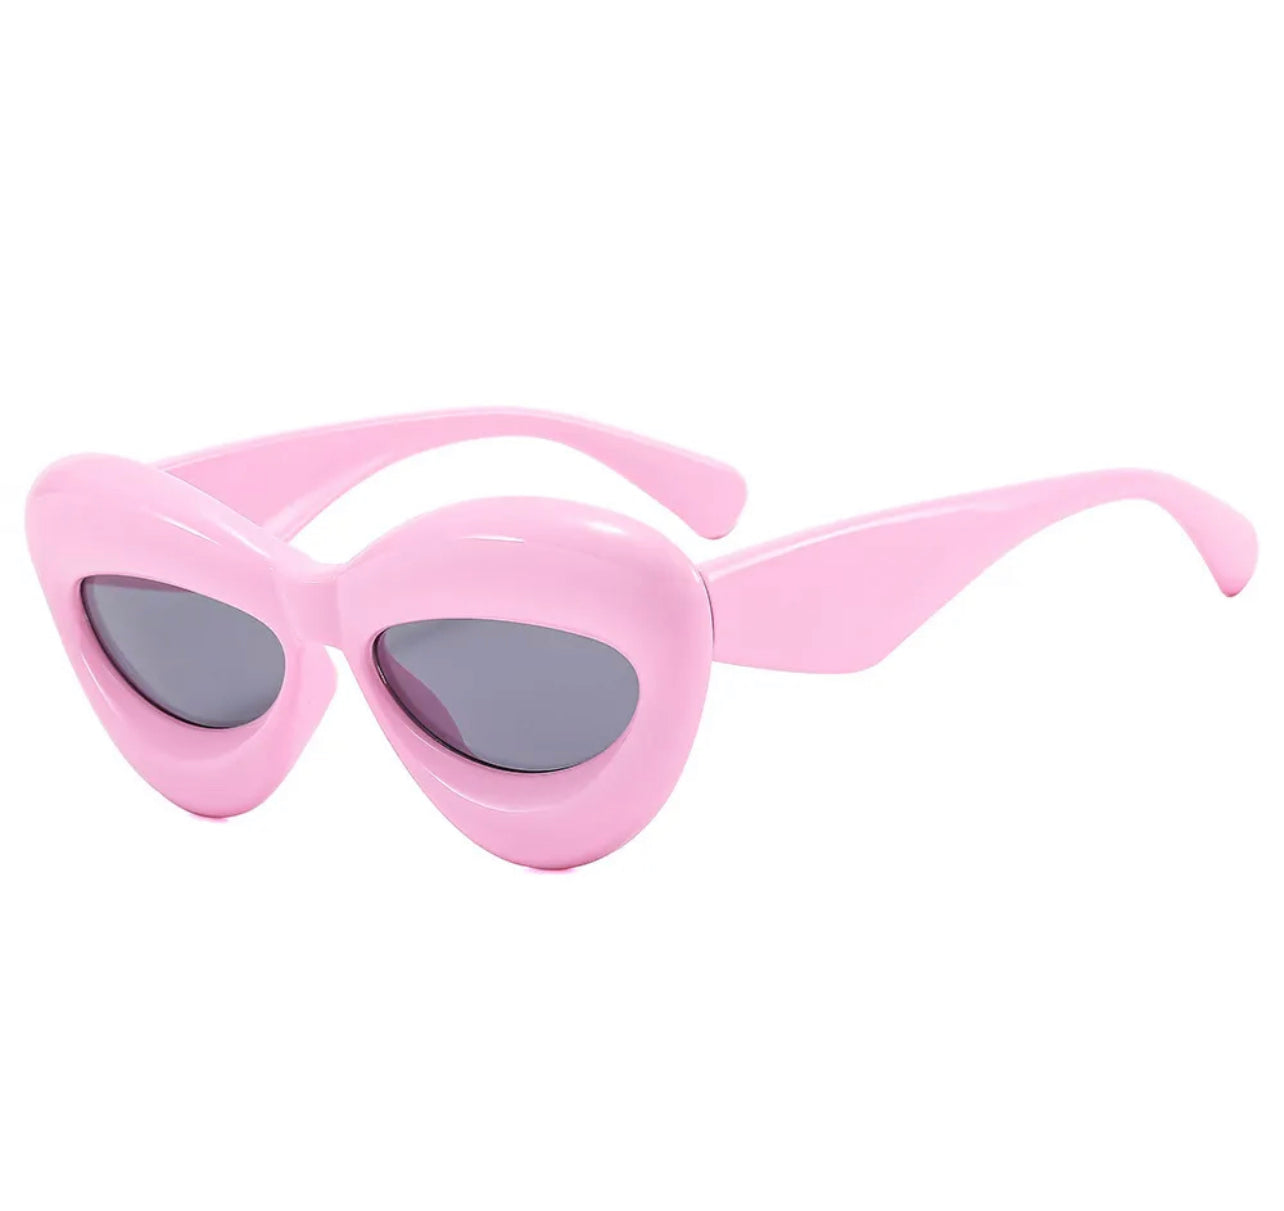 Retro Collection Sunglasses